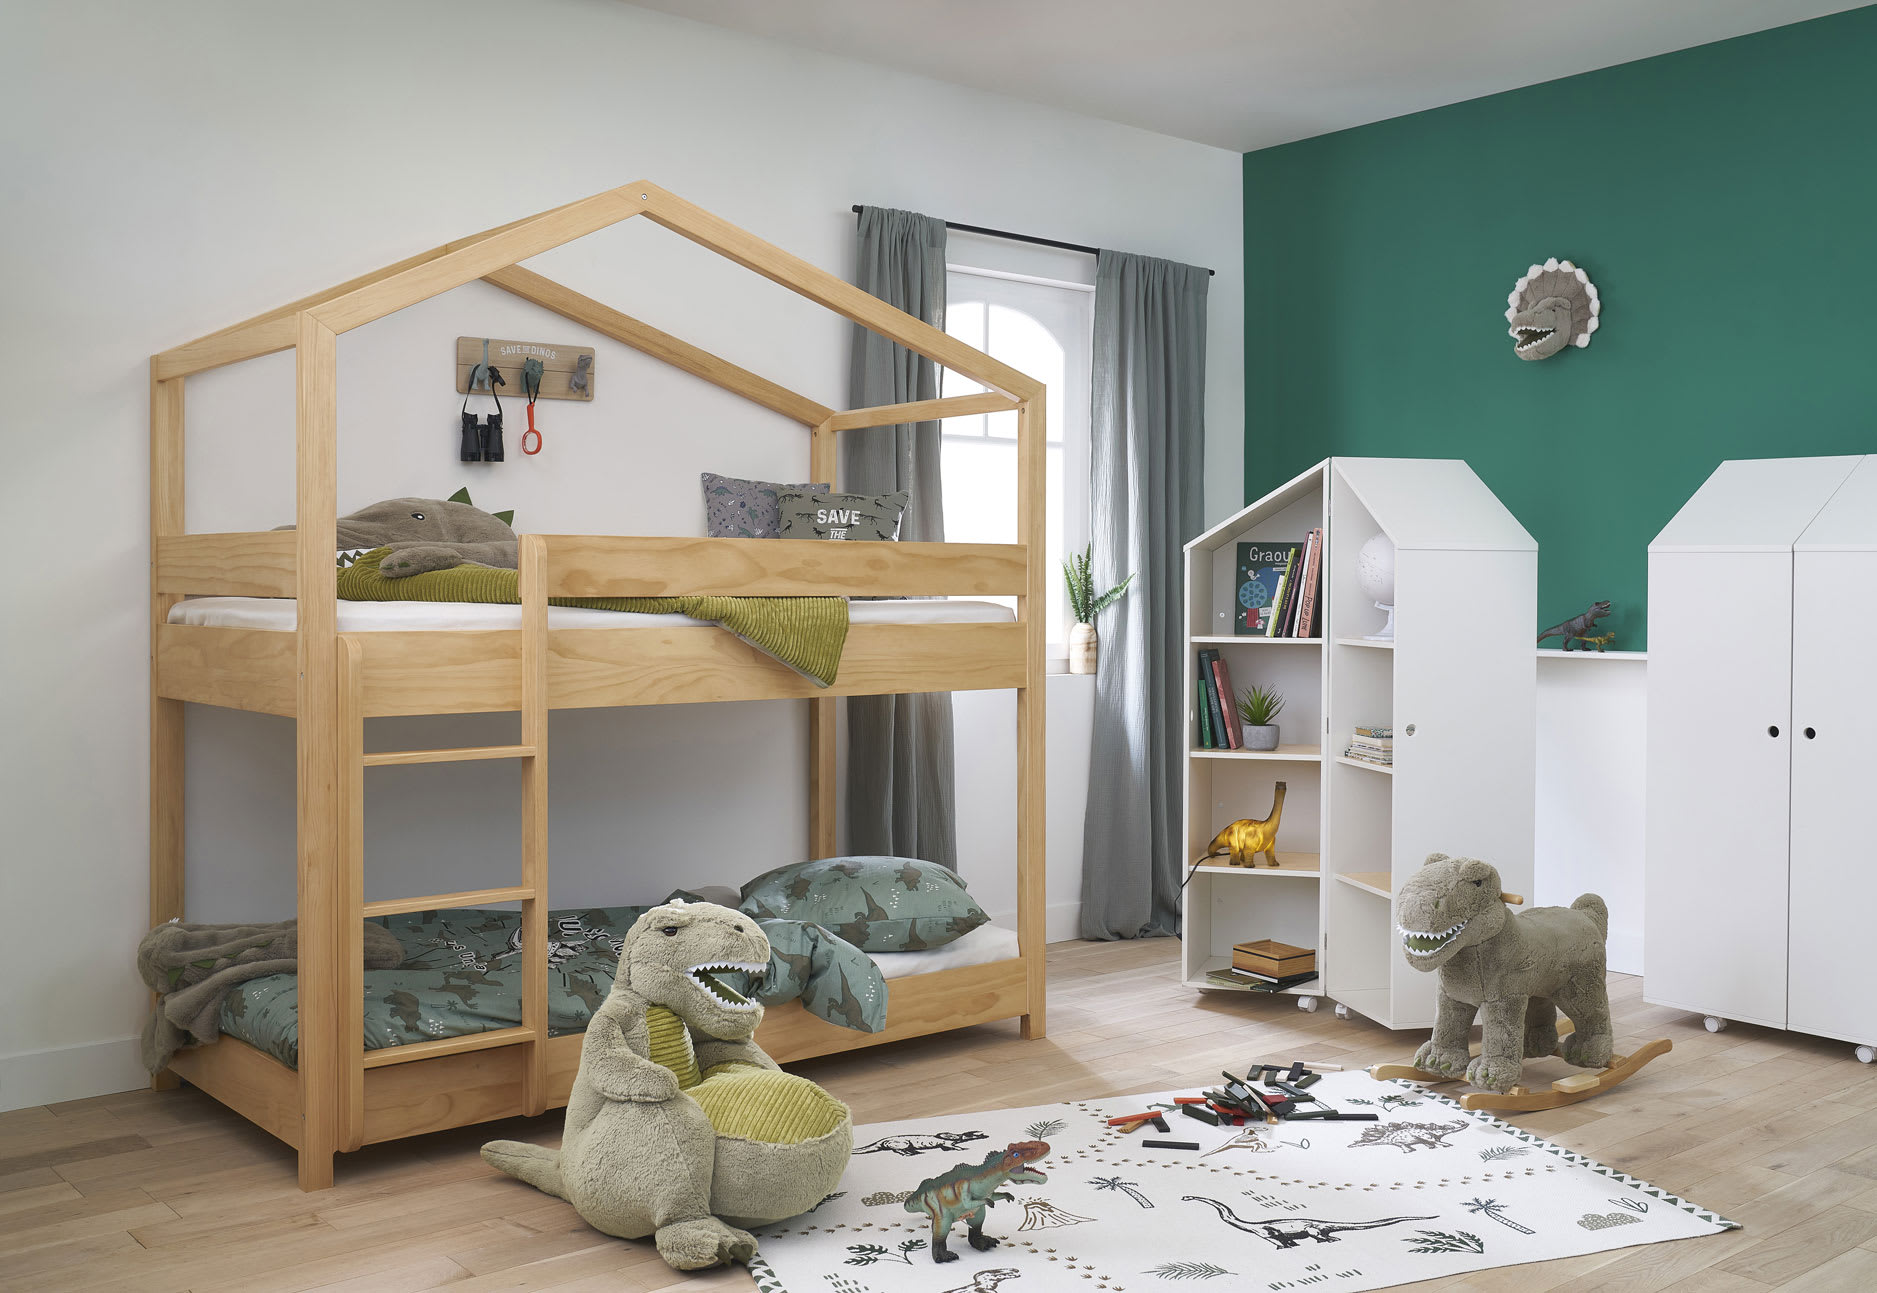 Lits, rangements et autre mobilier pour une chambre d'enfant